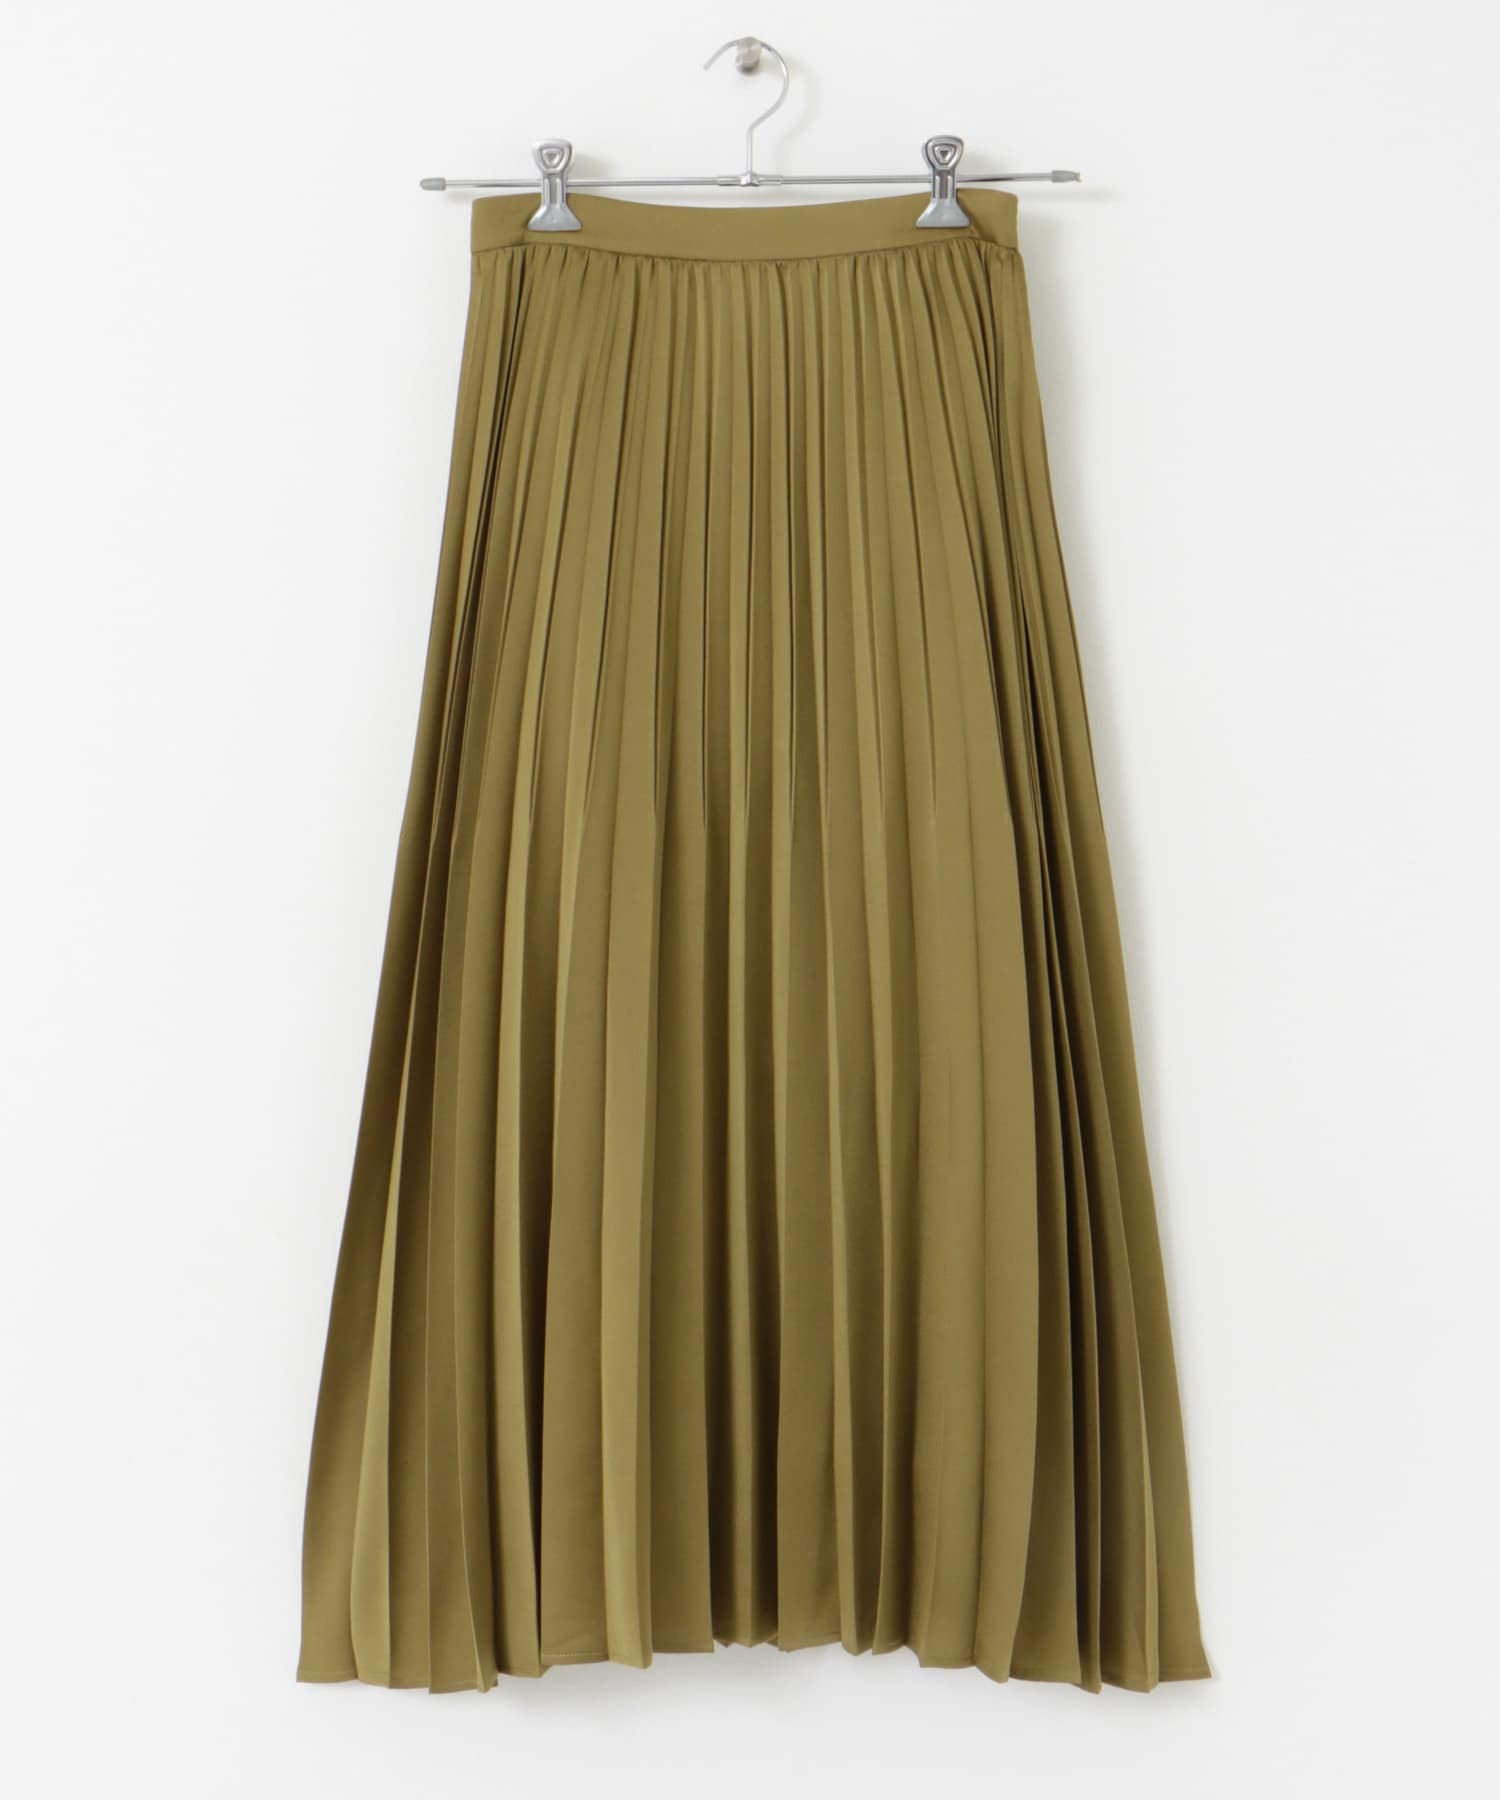 緞紋百褶裙(金色-36-CAMEL)